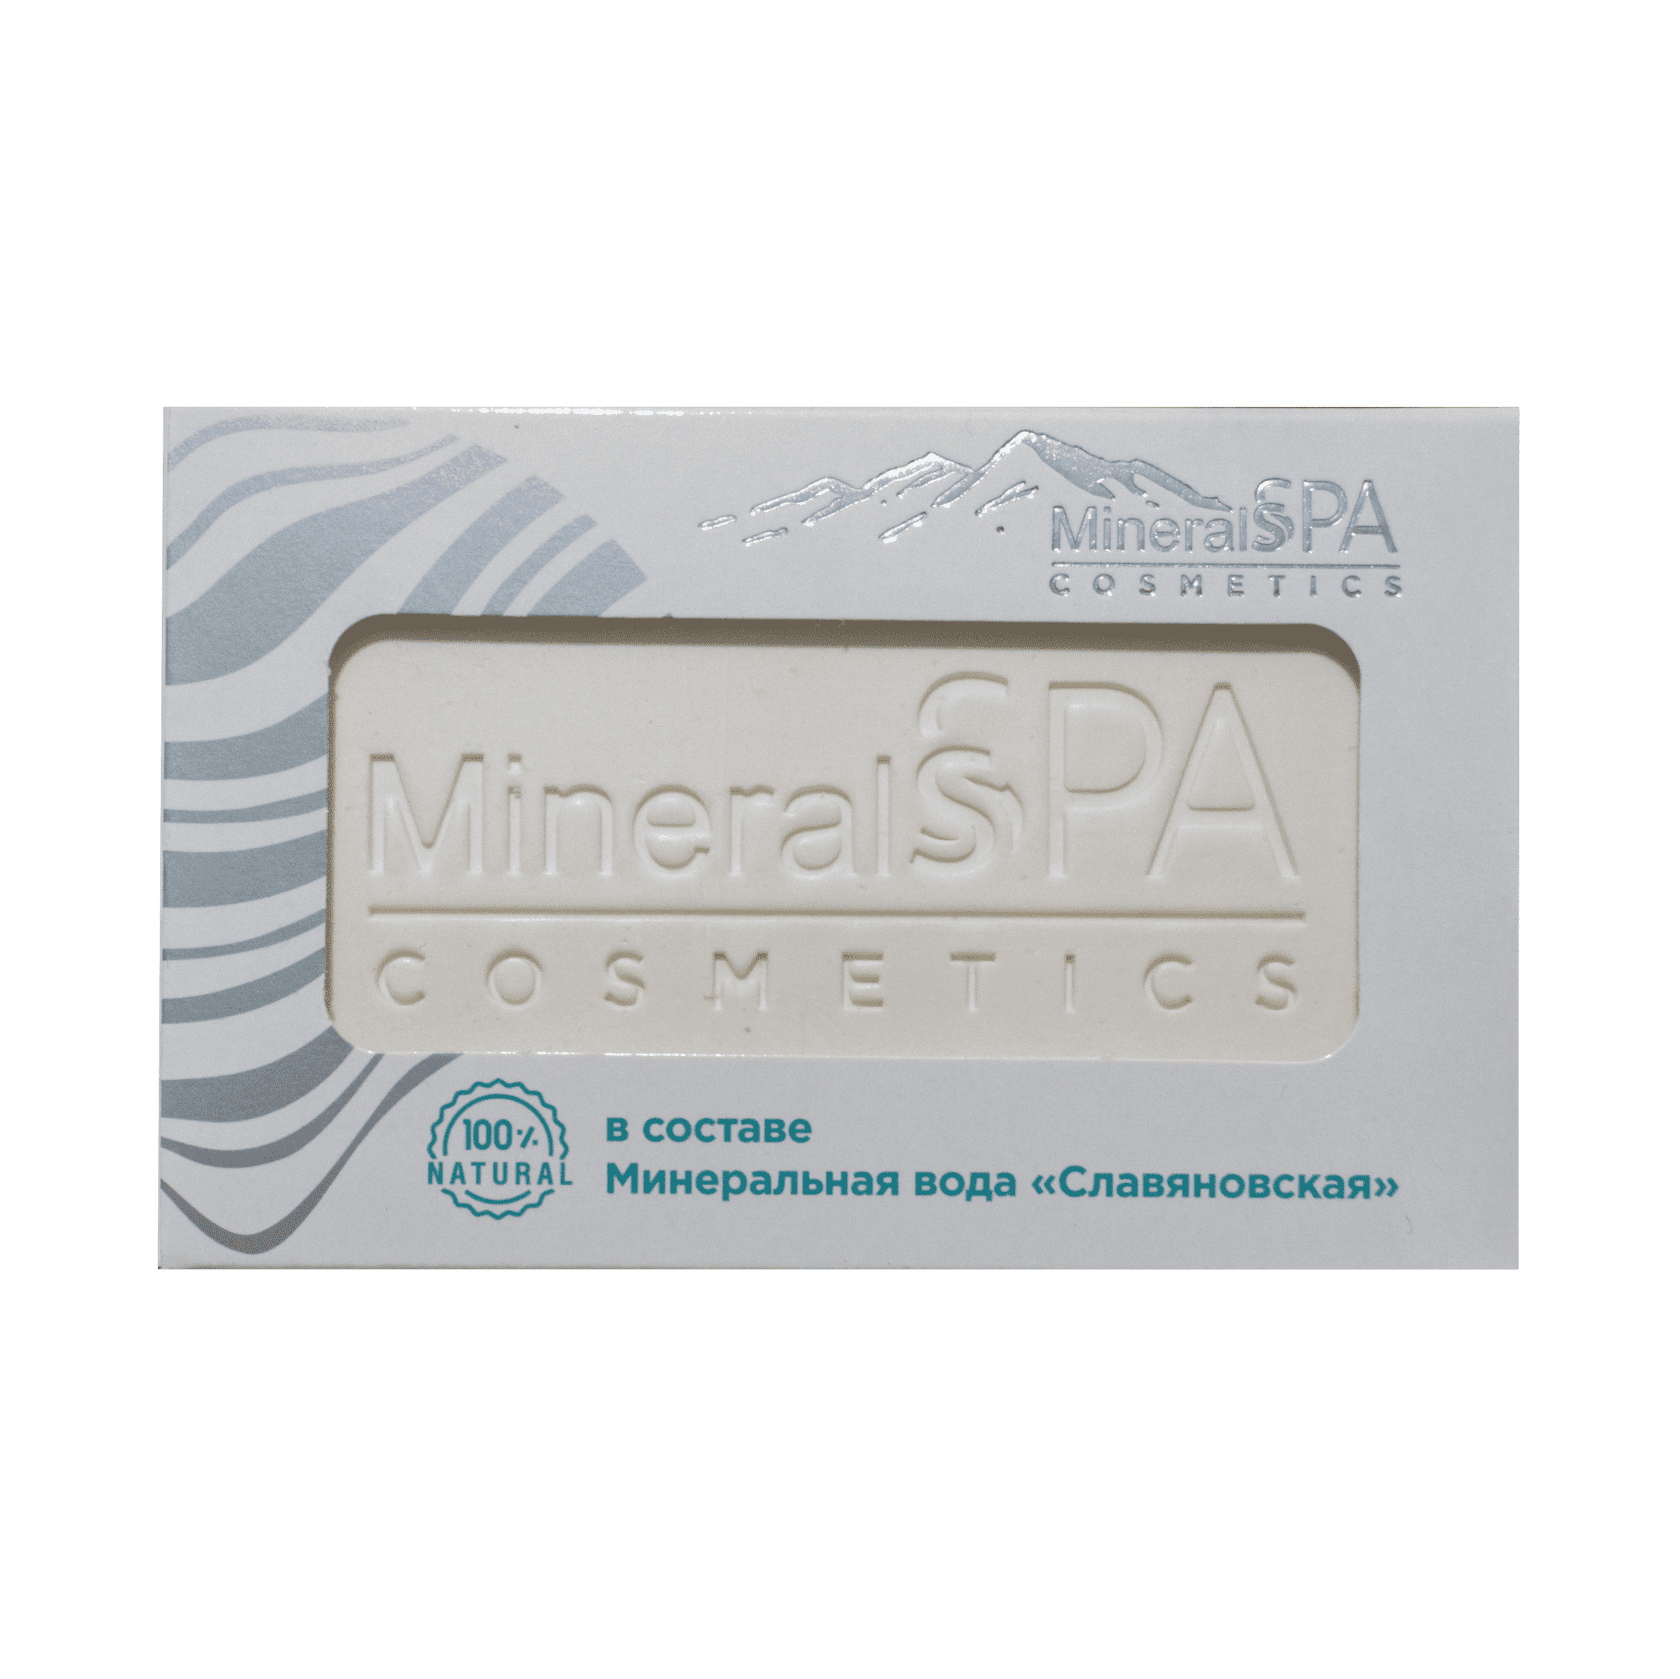 Мыло «MineralSPA cosmetics» на основе минеральной воды Славяновская